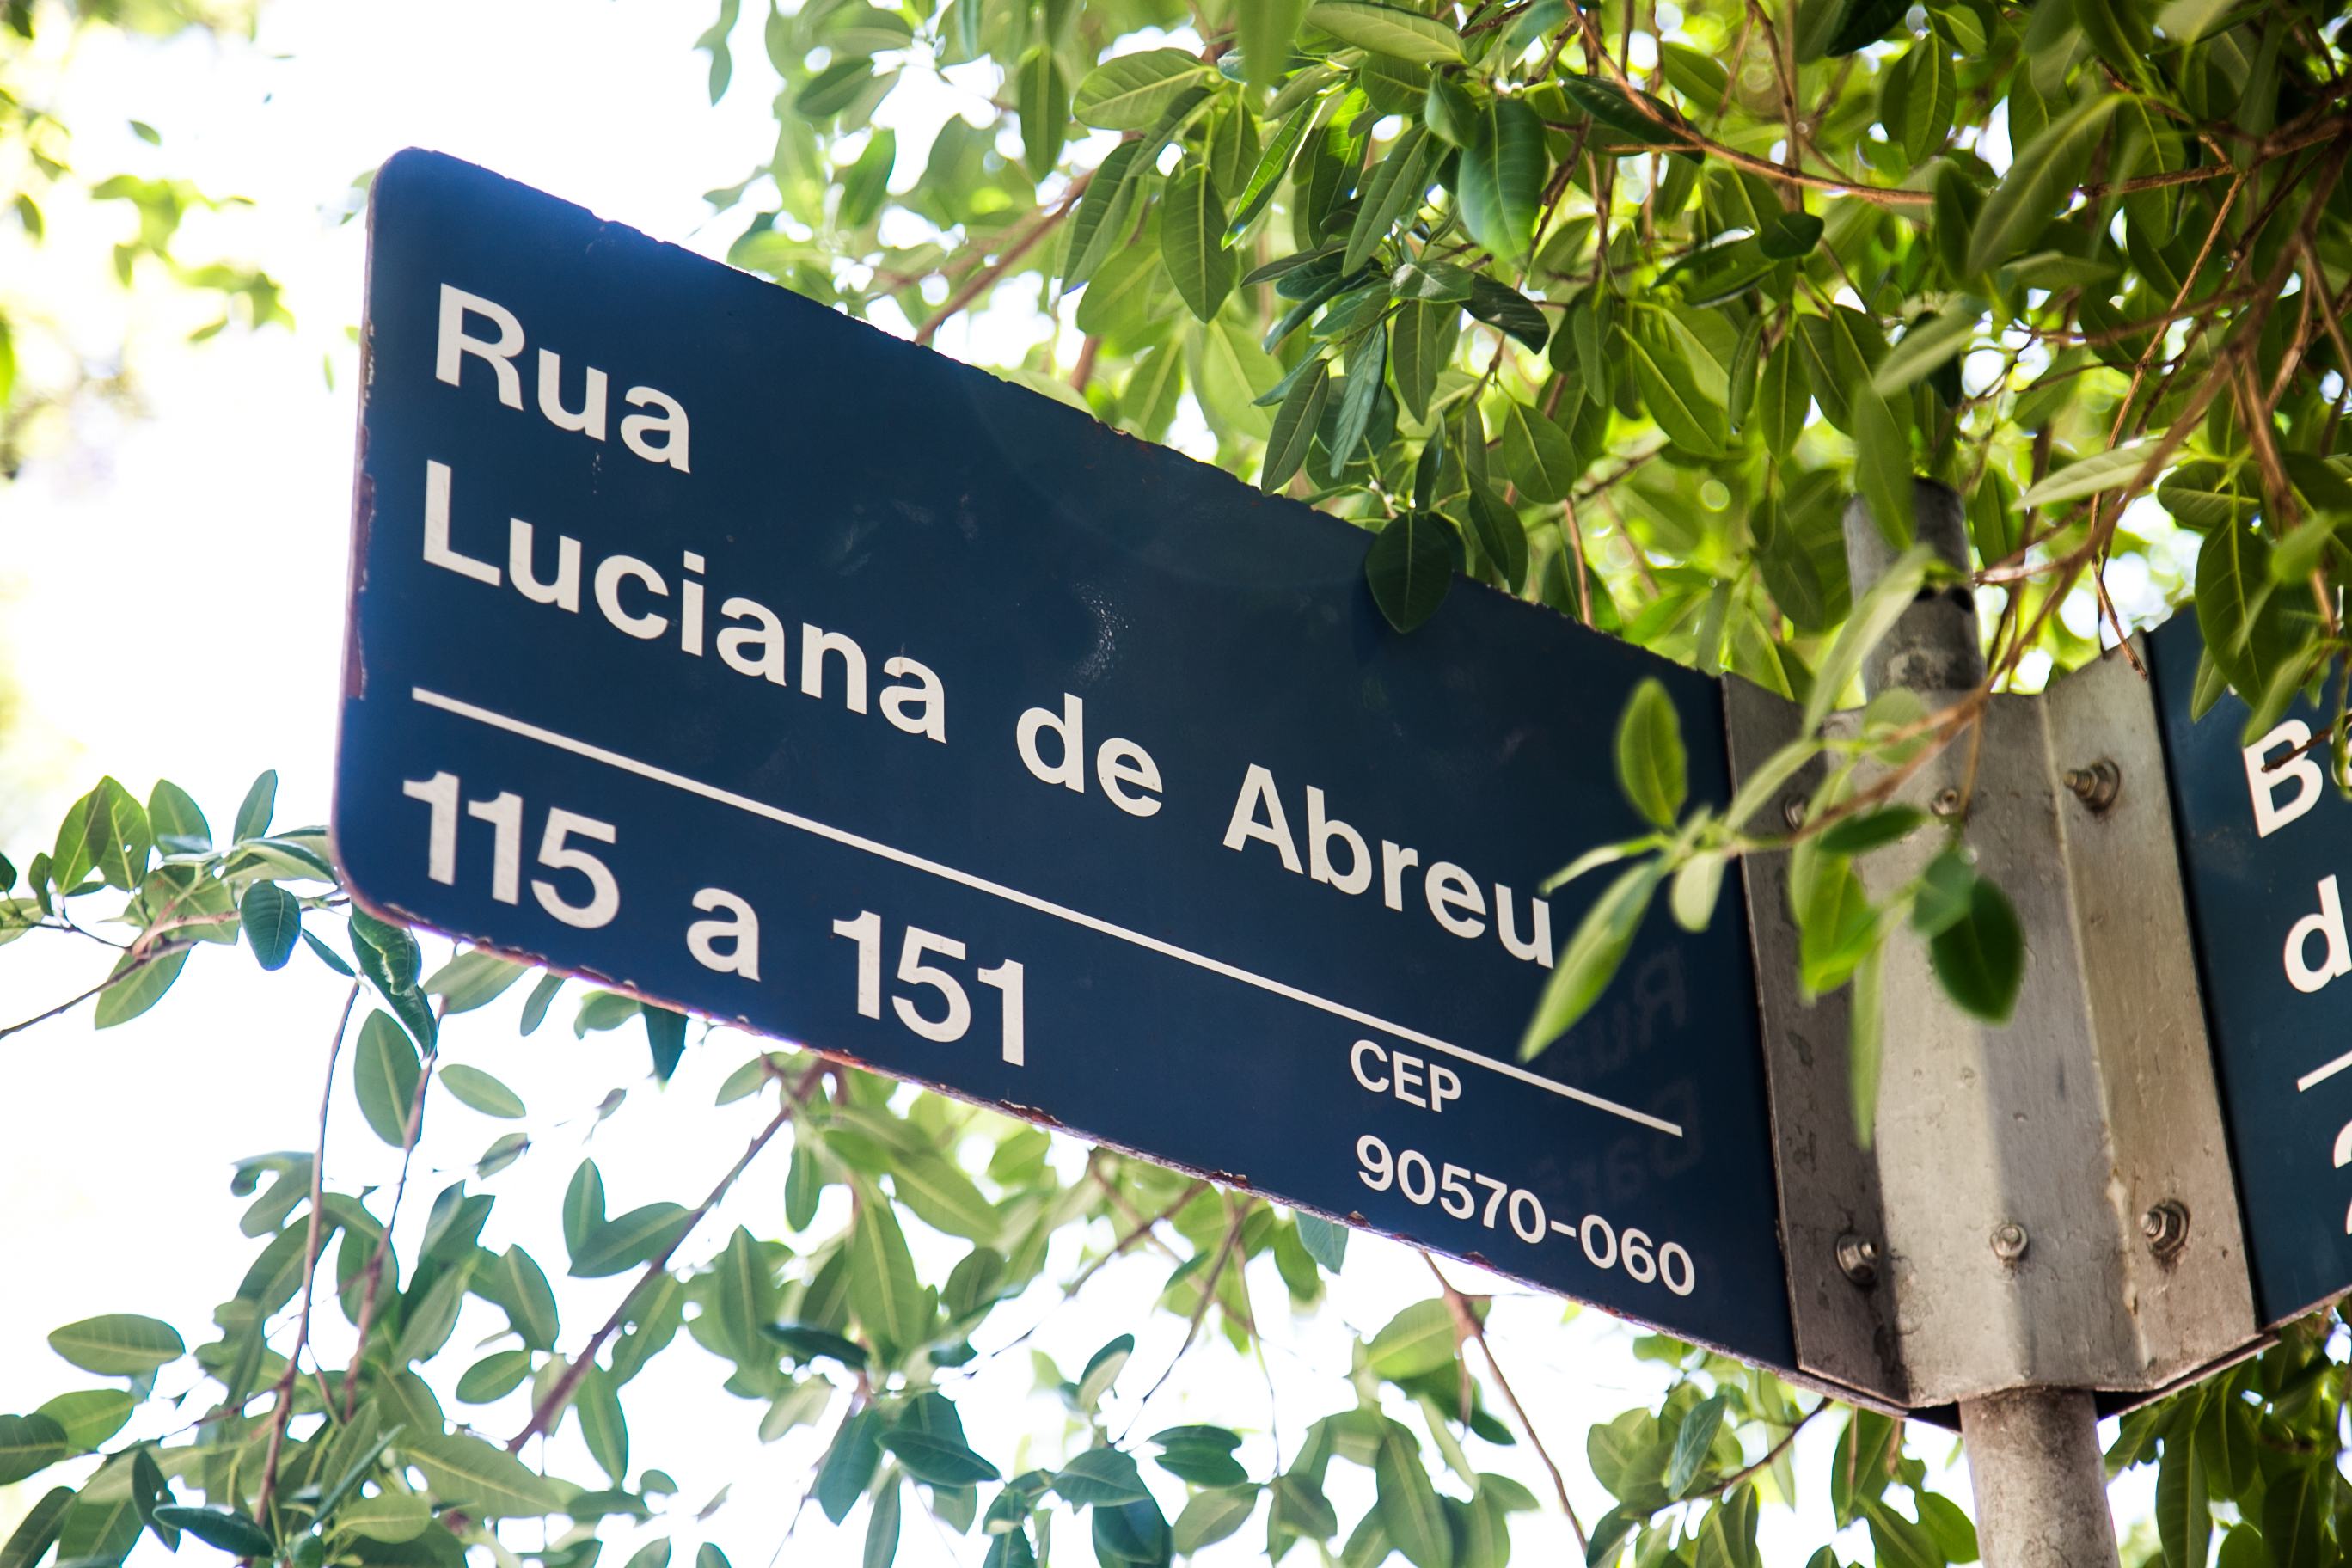 06/12/2016 - PORTO ALEGRE, RS - A Rua Luciana de Abreu foi a primeira rua de Porto Alegre a receber o nome de uma mulher. |Foto: Maia Rubim/Sul21